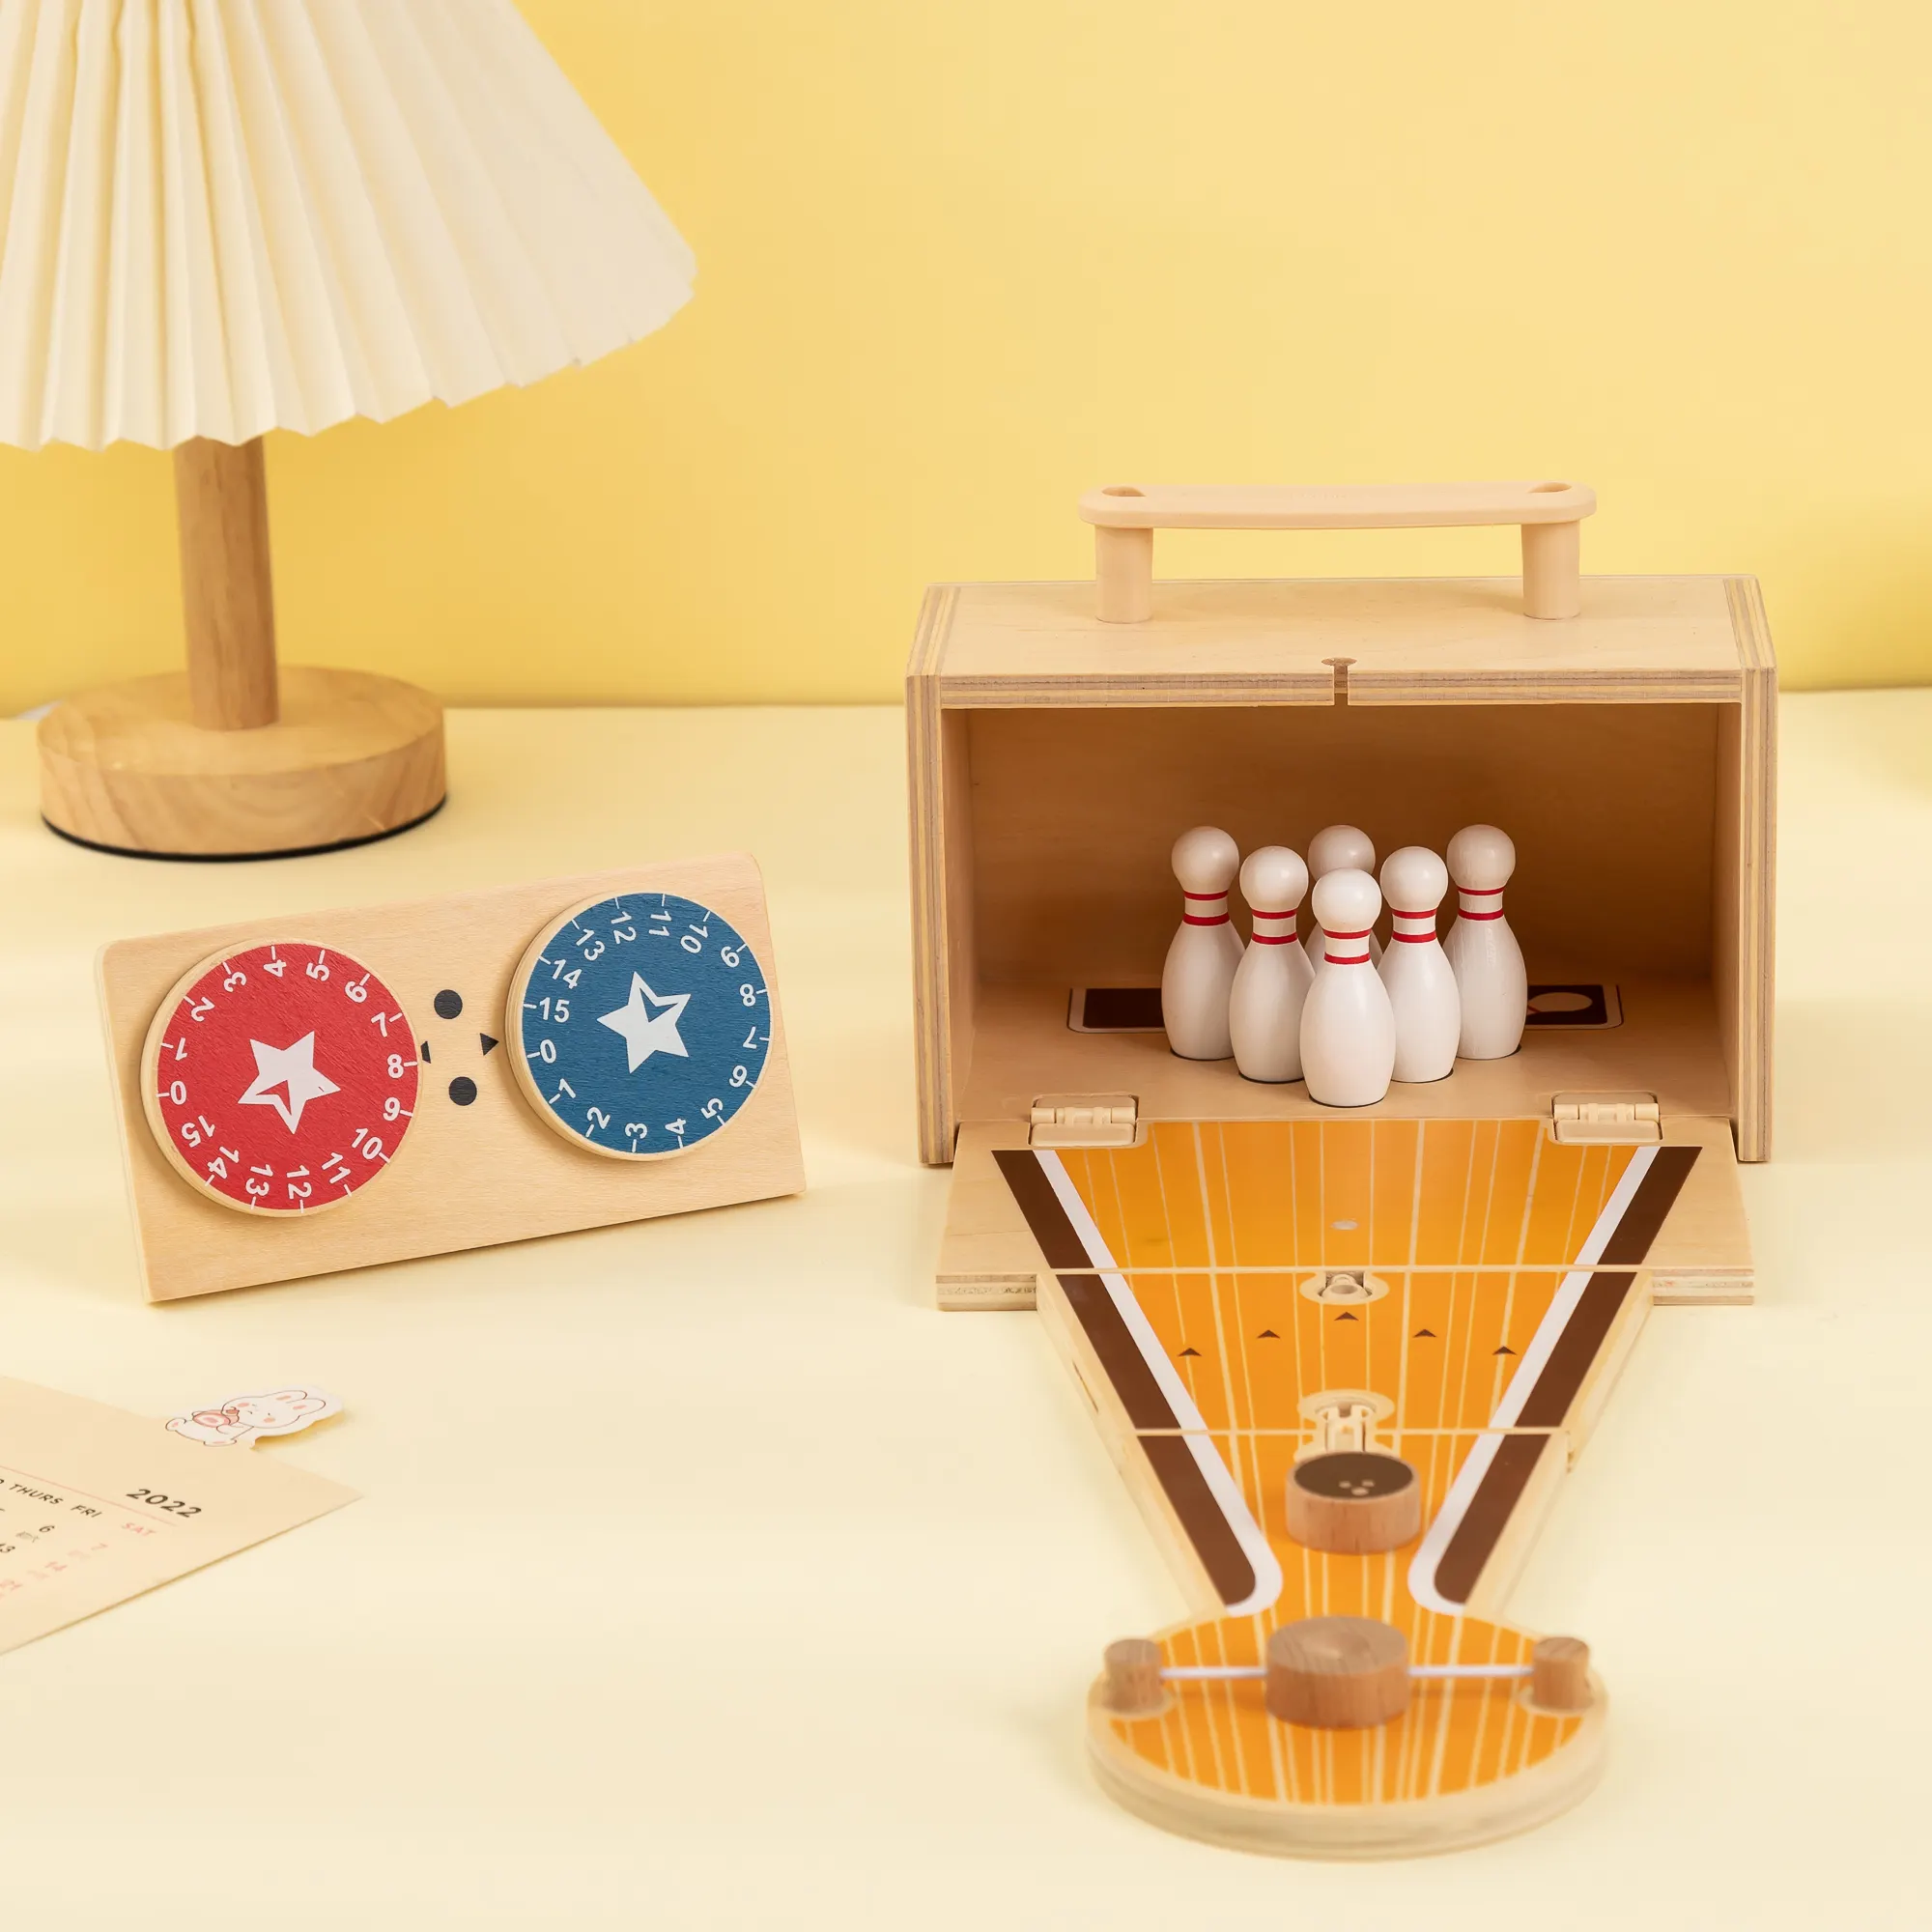 Udeas Kinderen Tafelspel Speelgoed Indoor Tafelblad Mini Houten Bowlingspellen Voor Kind